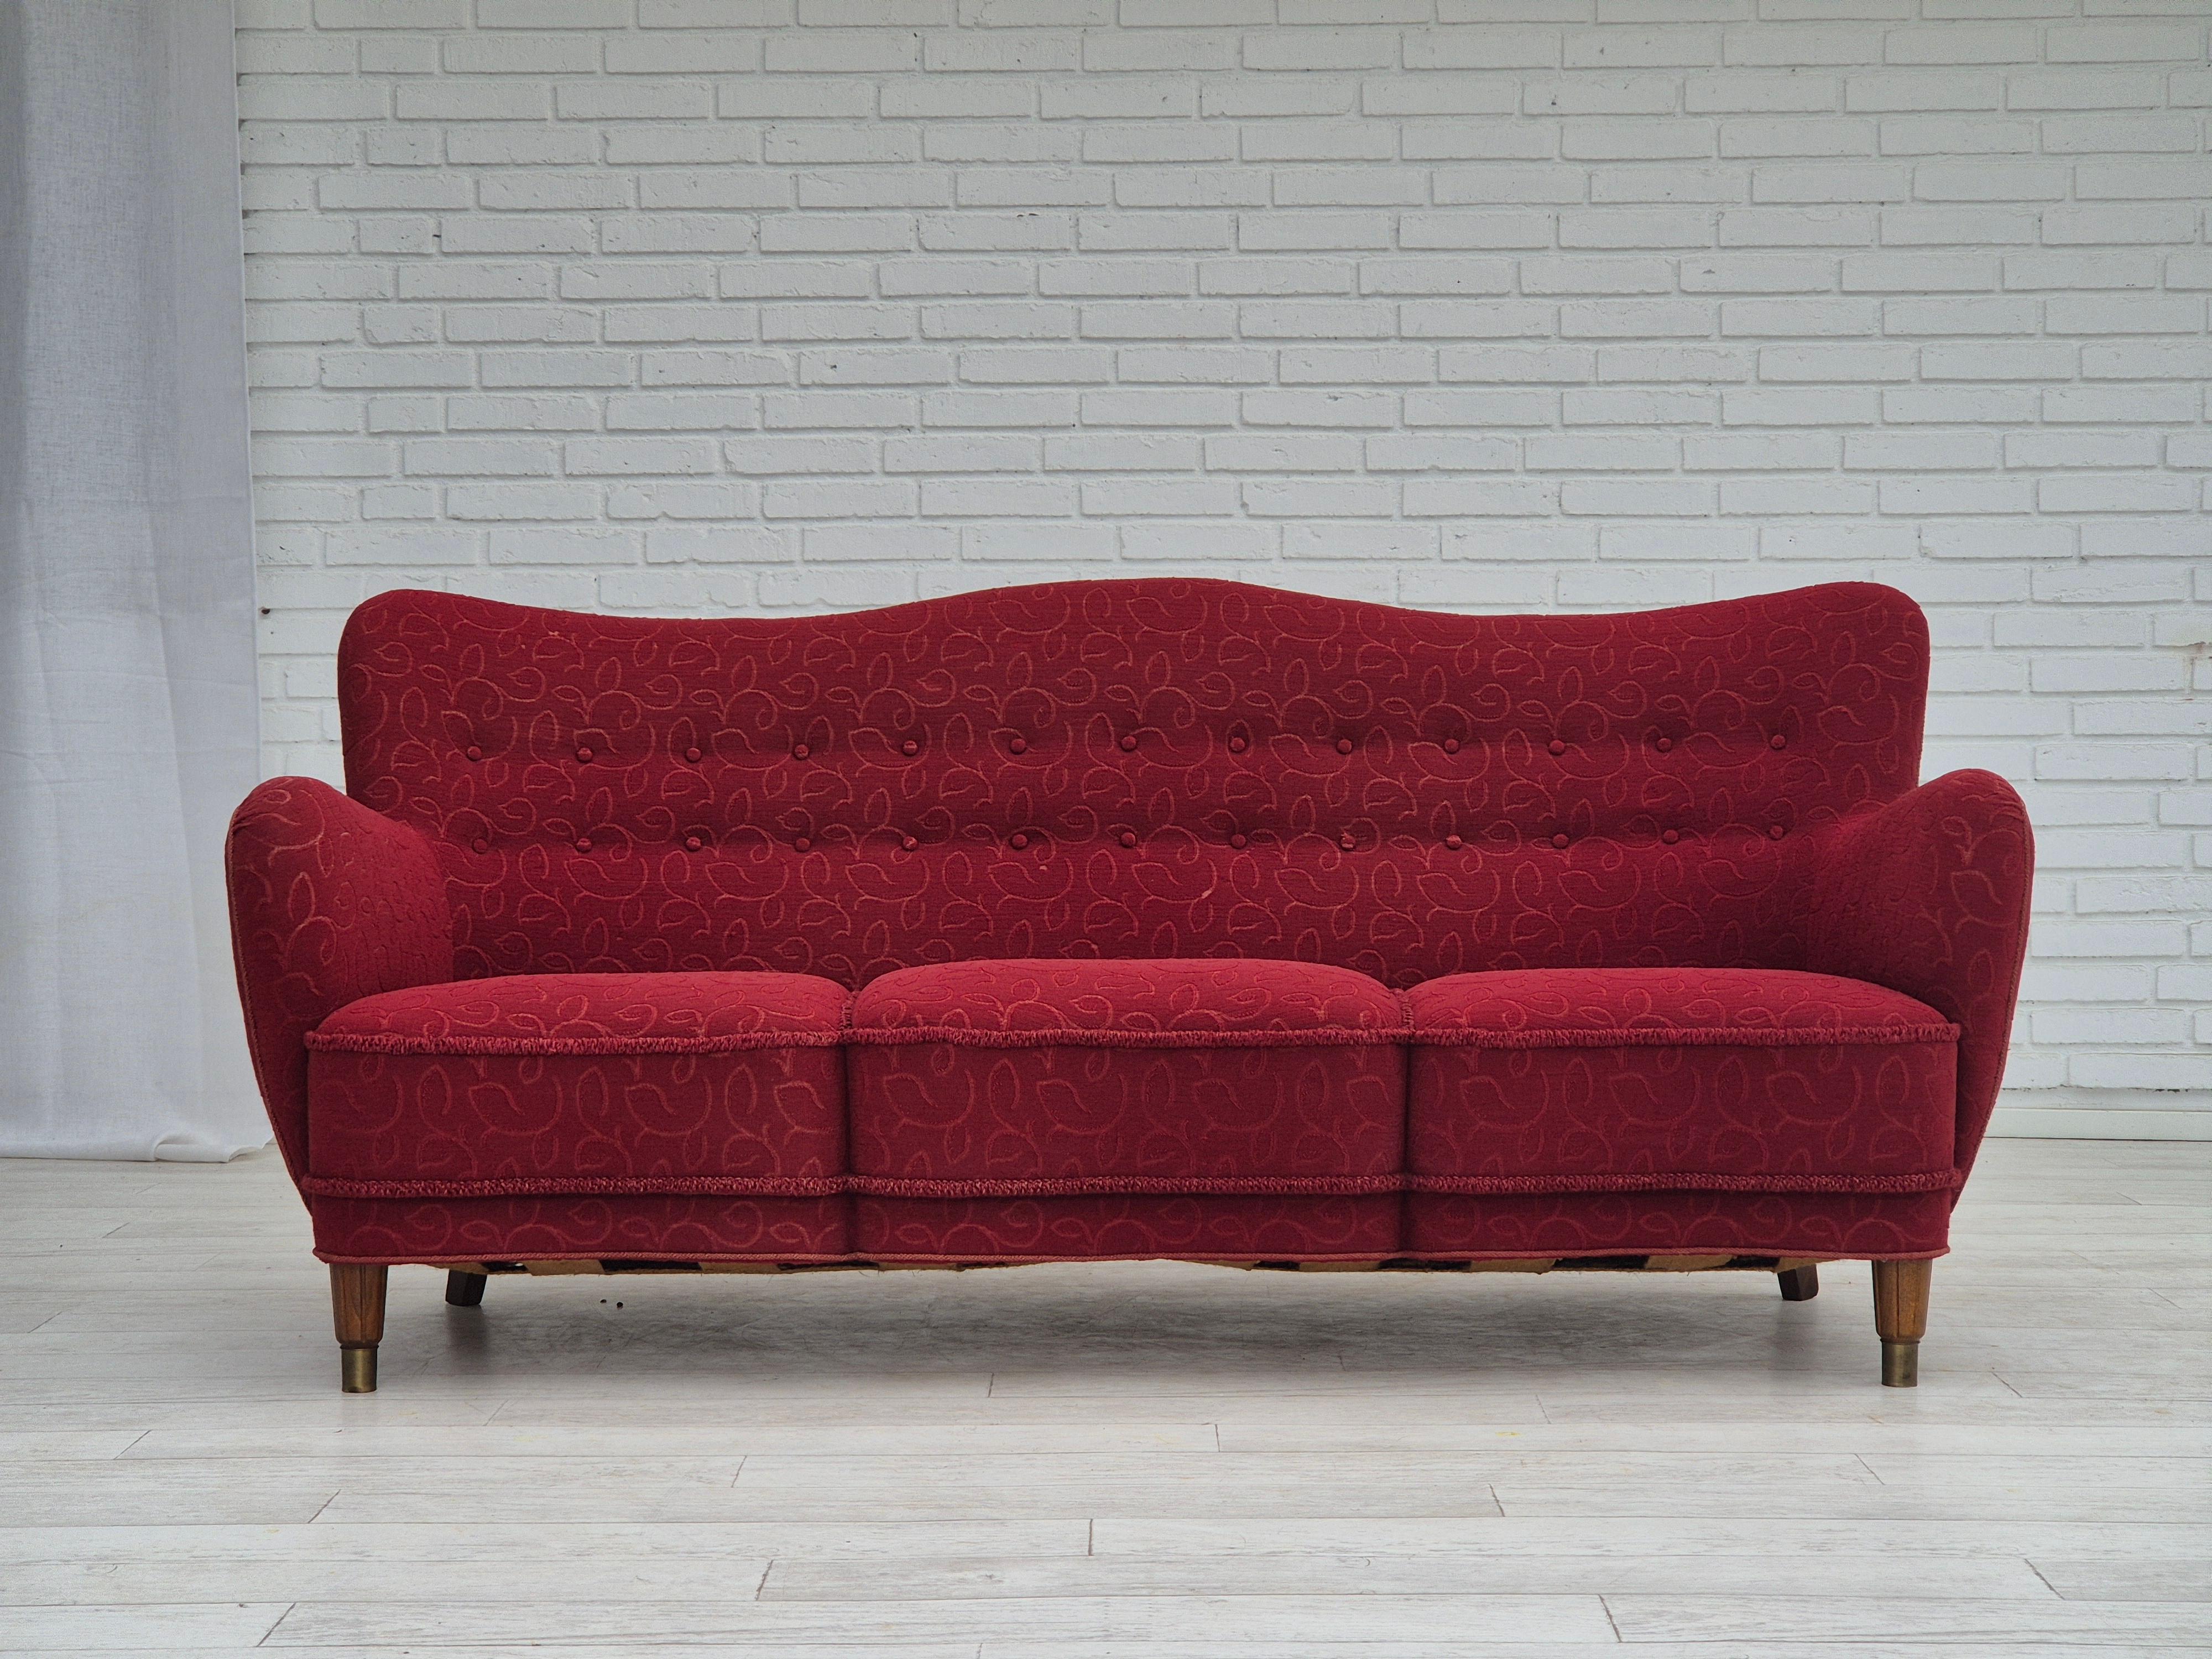 Dänisches 3-Sitzer-Sofa aus den 1960er Jahren in sehr gutem Originalzustand: keine Gerüche und keine Flecken. Original roter Möbelstoff aus Watte. Beine aus Buchenholz mit Messingdübeln. Messingfedern im Sitz. Hergestellt von einem dänischen